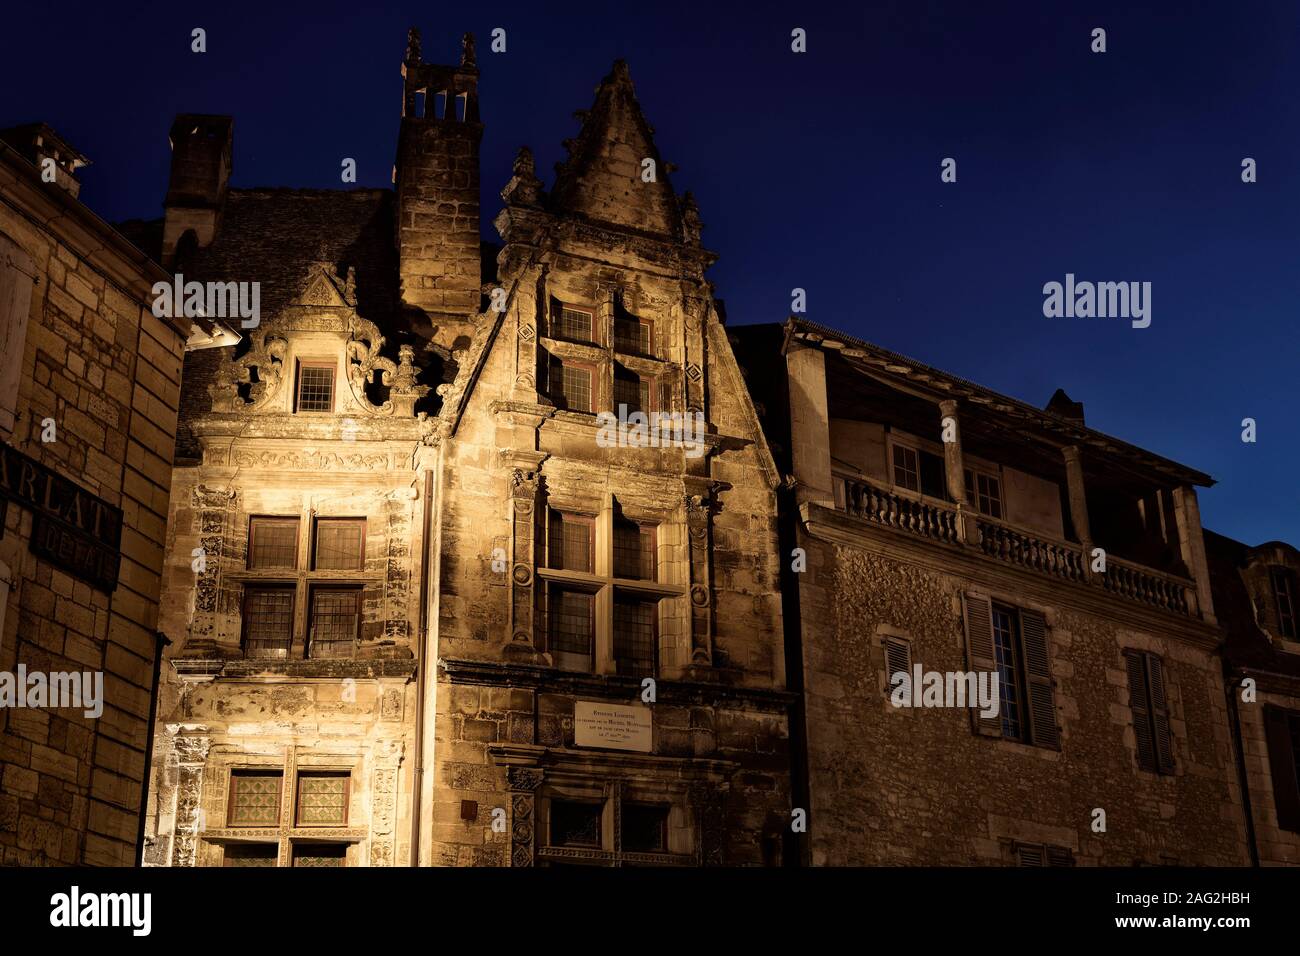 Maison de la Boétie, en el edificio histórico de la ciudad de Sarlat, en el sur de Francia. Paisaje nocturno, Estienne de LaBoétie Maison, Sarlat-la-canéda, Dordogn Foto de stock